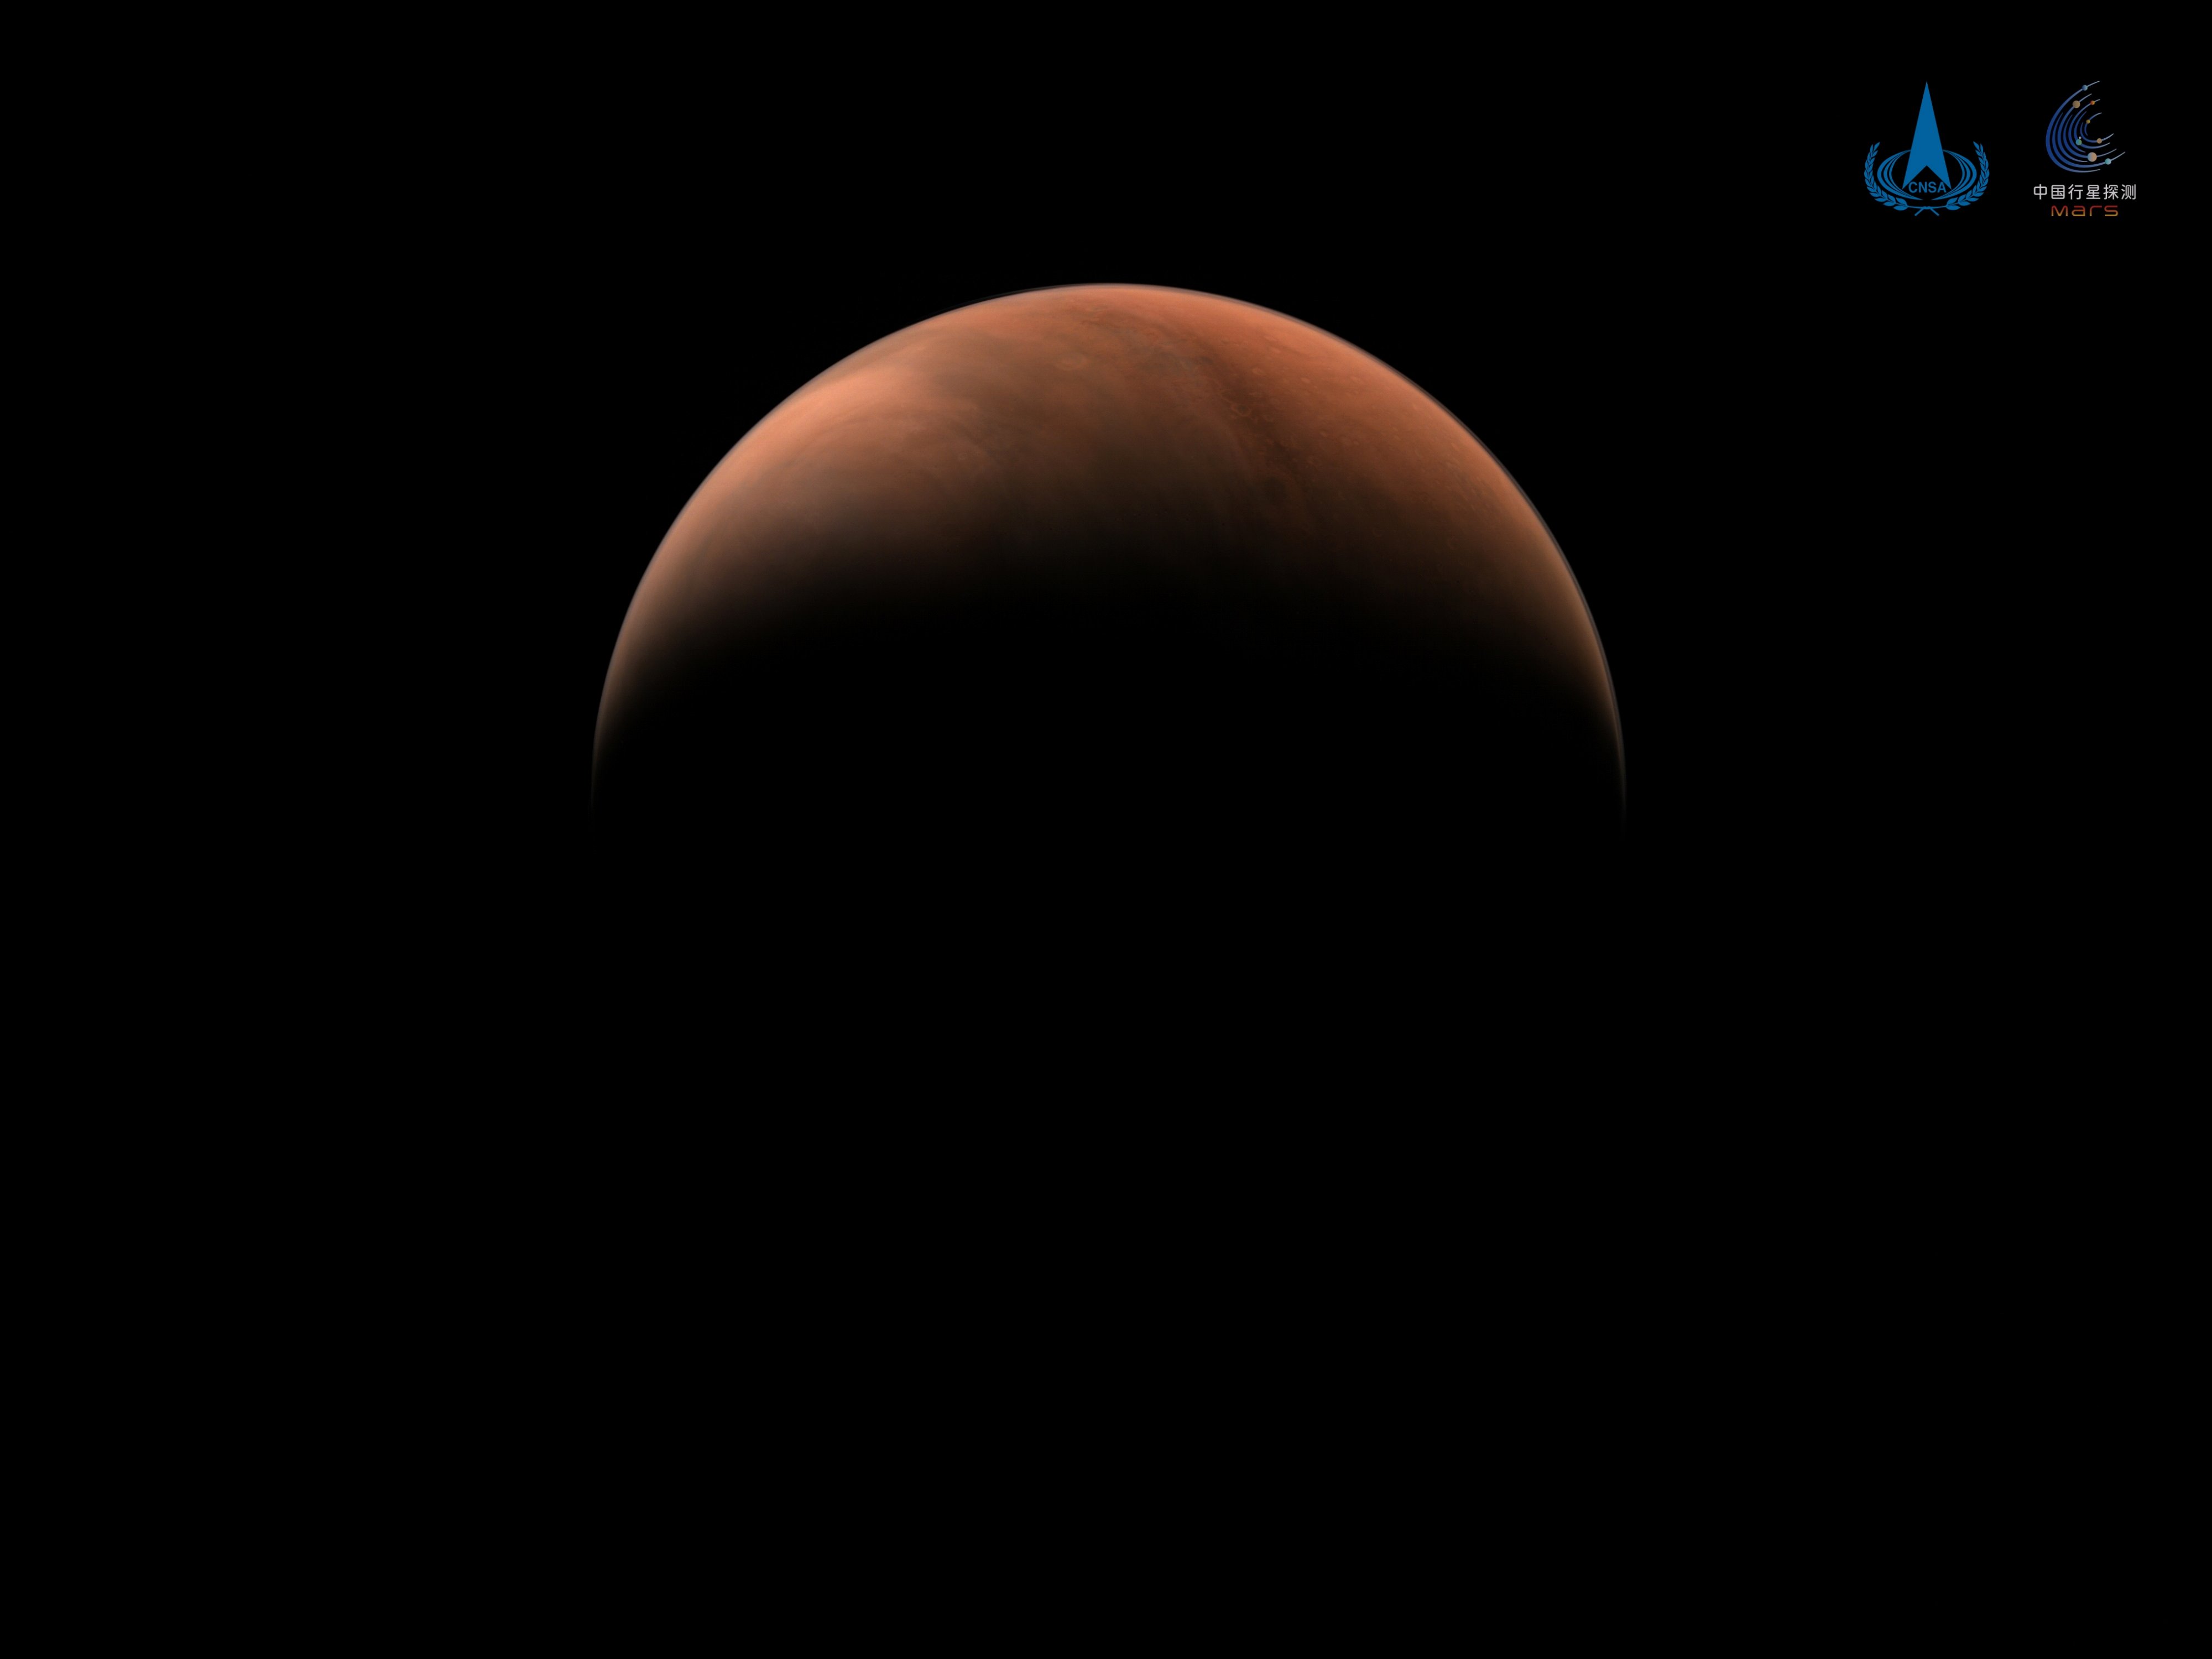 كوكب المريخ من الظل